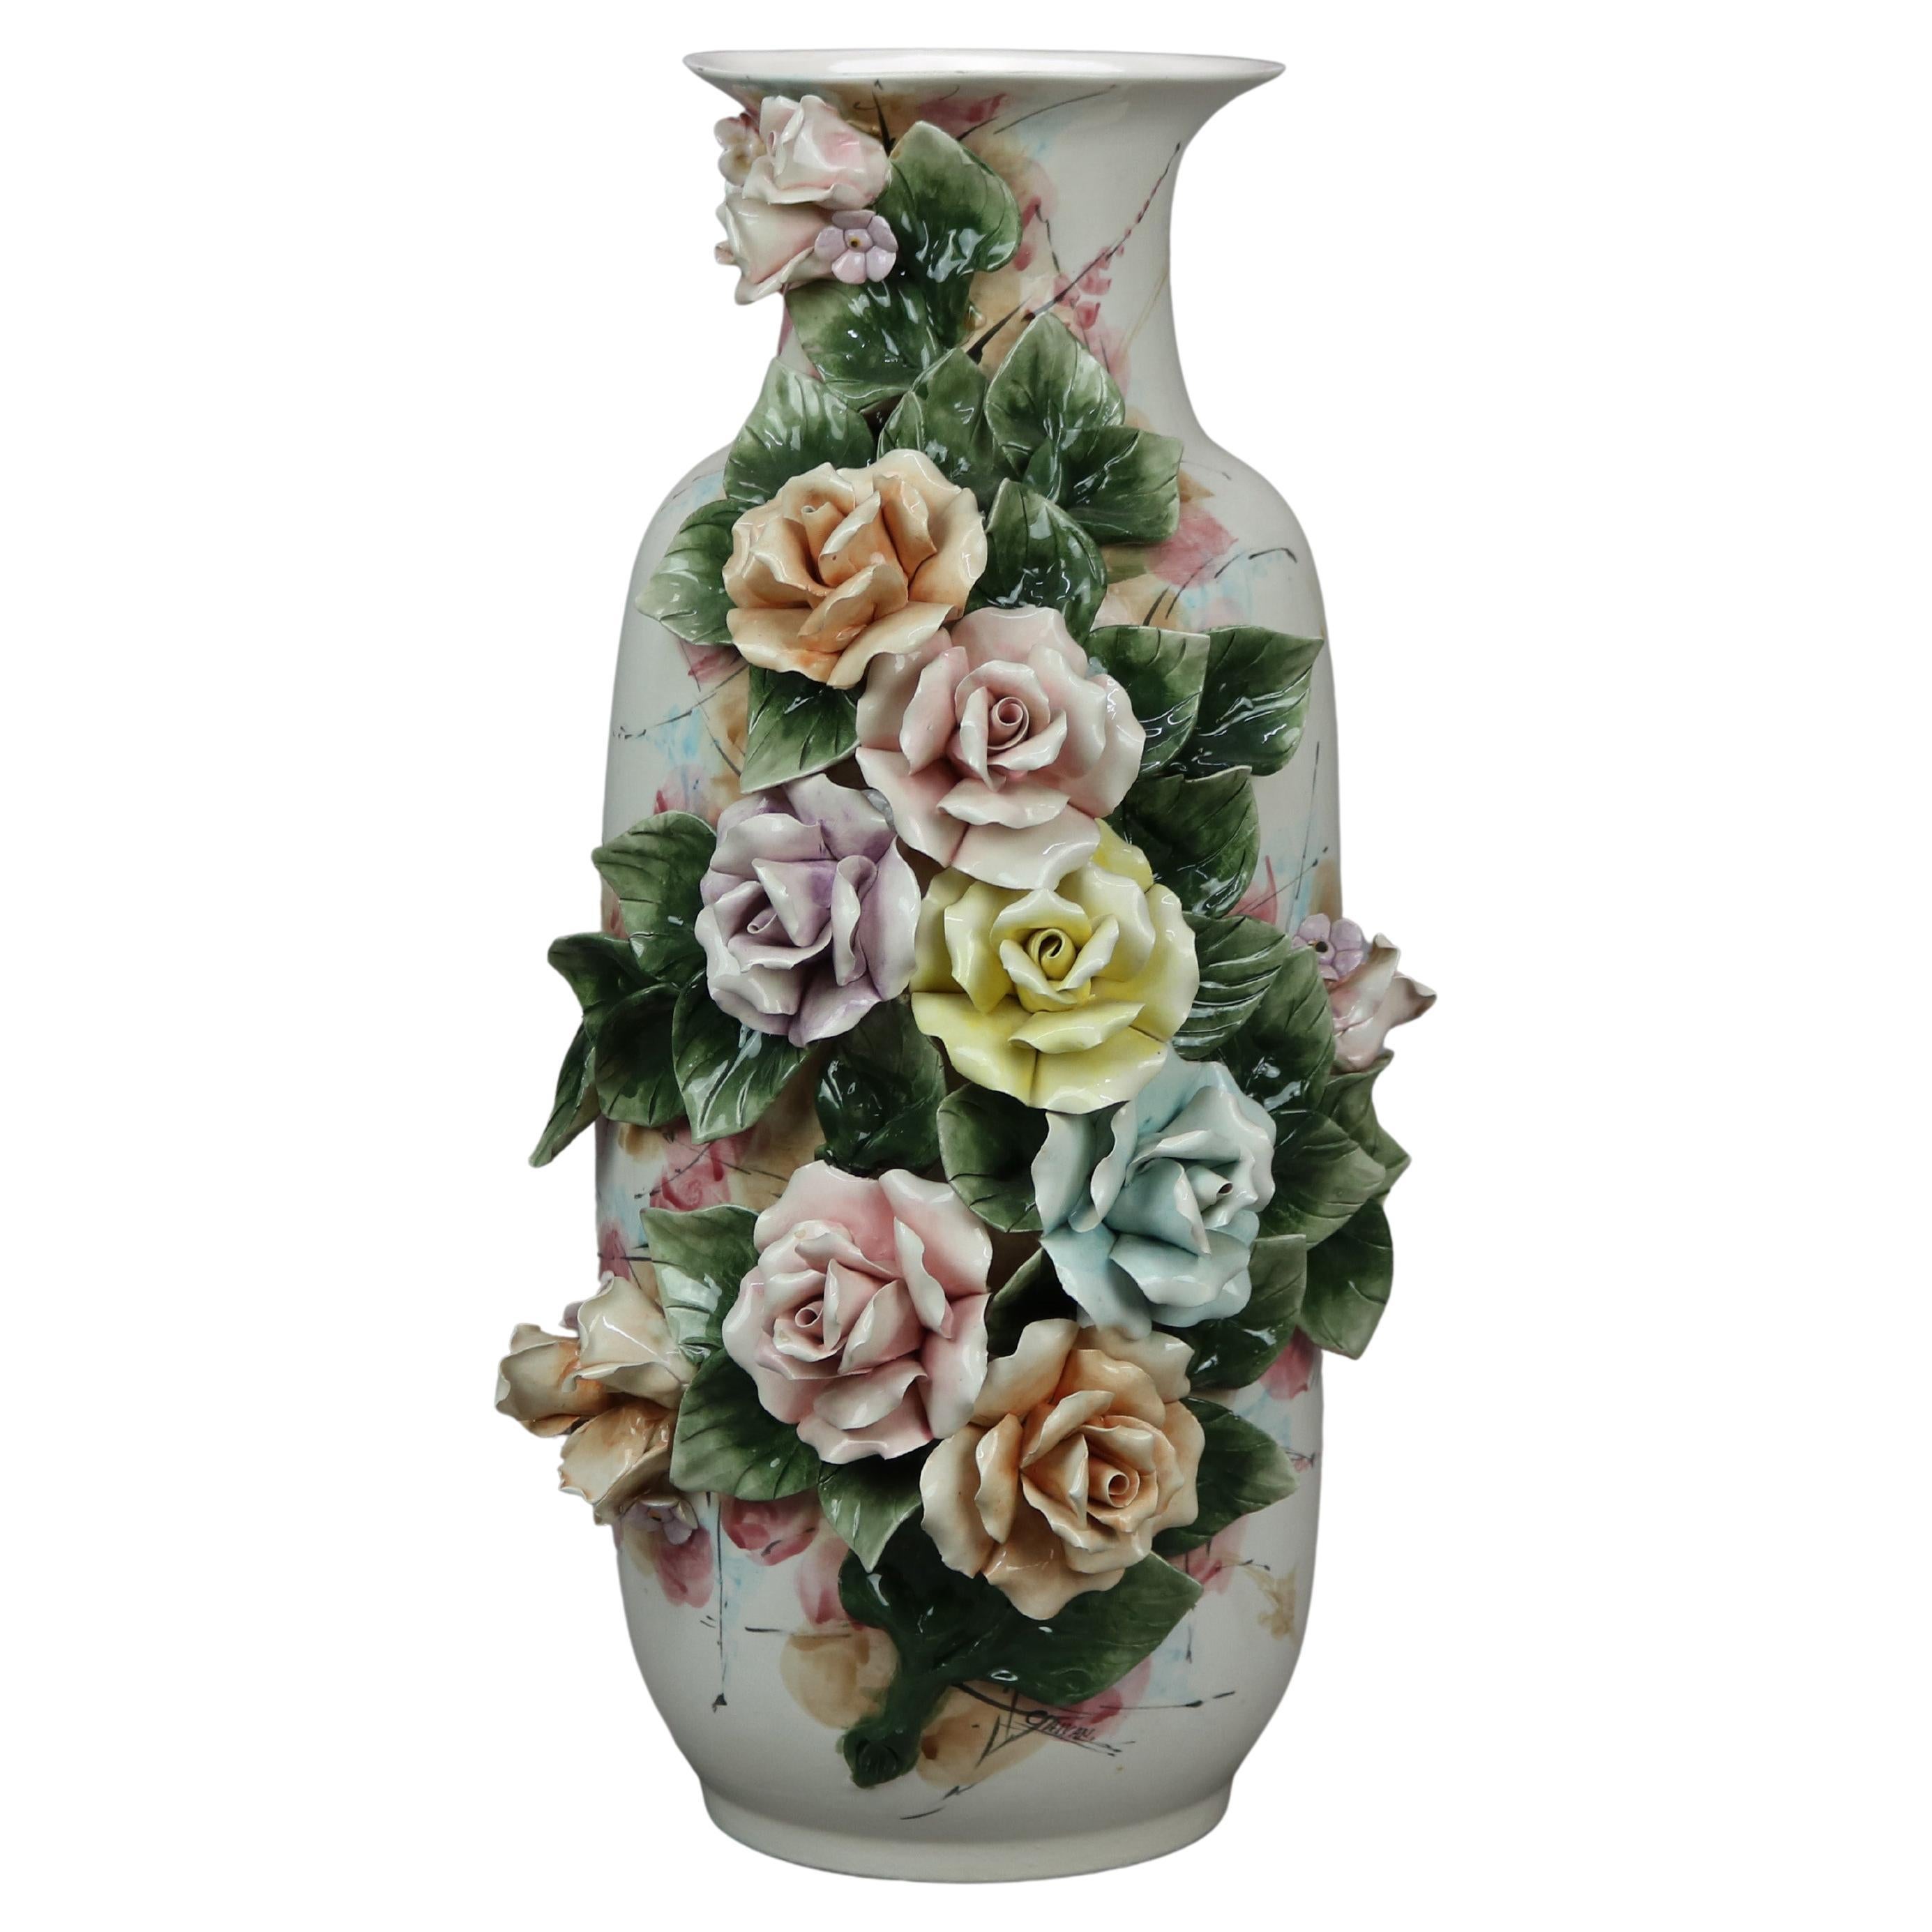 Antique Italian Capodimonte Pottery Floor Vase with Applied Flowers, c1900